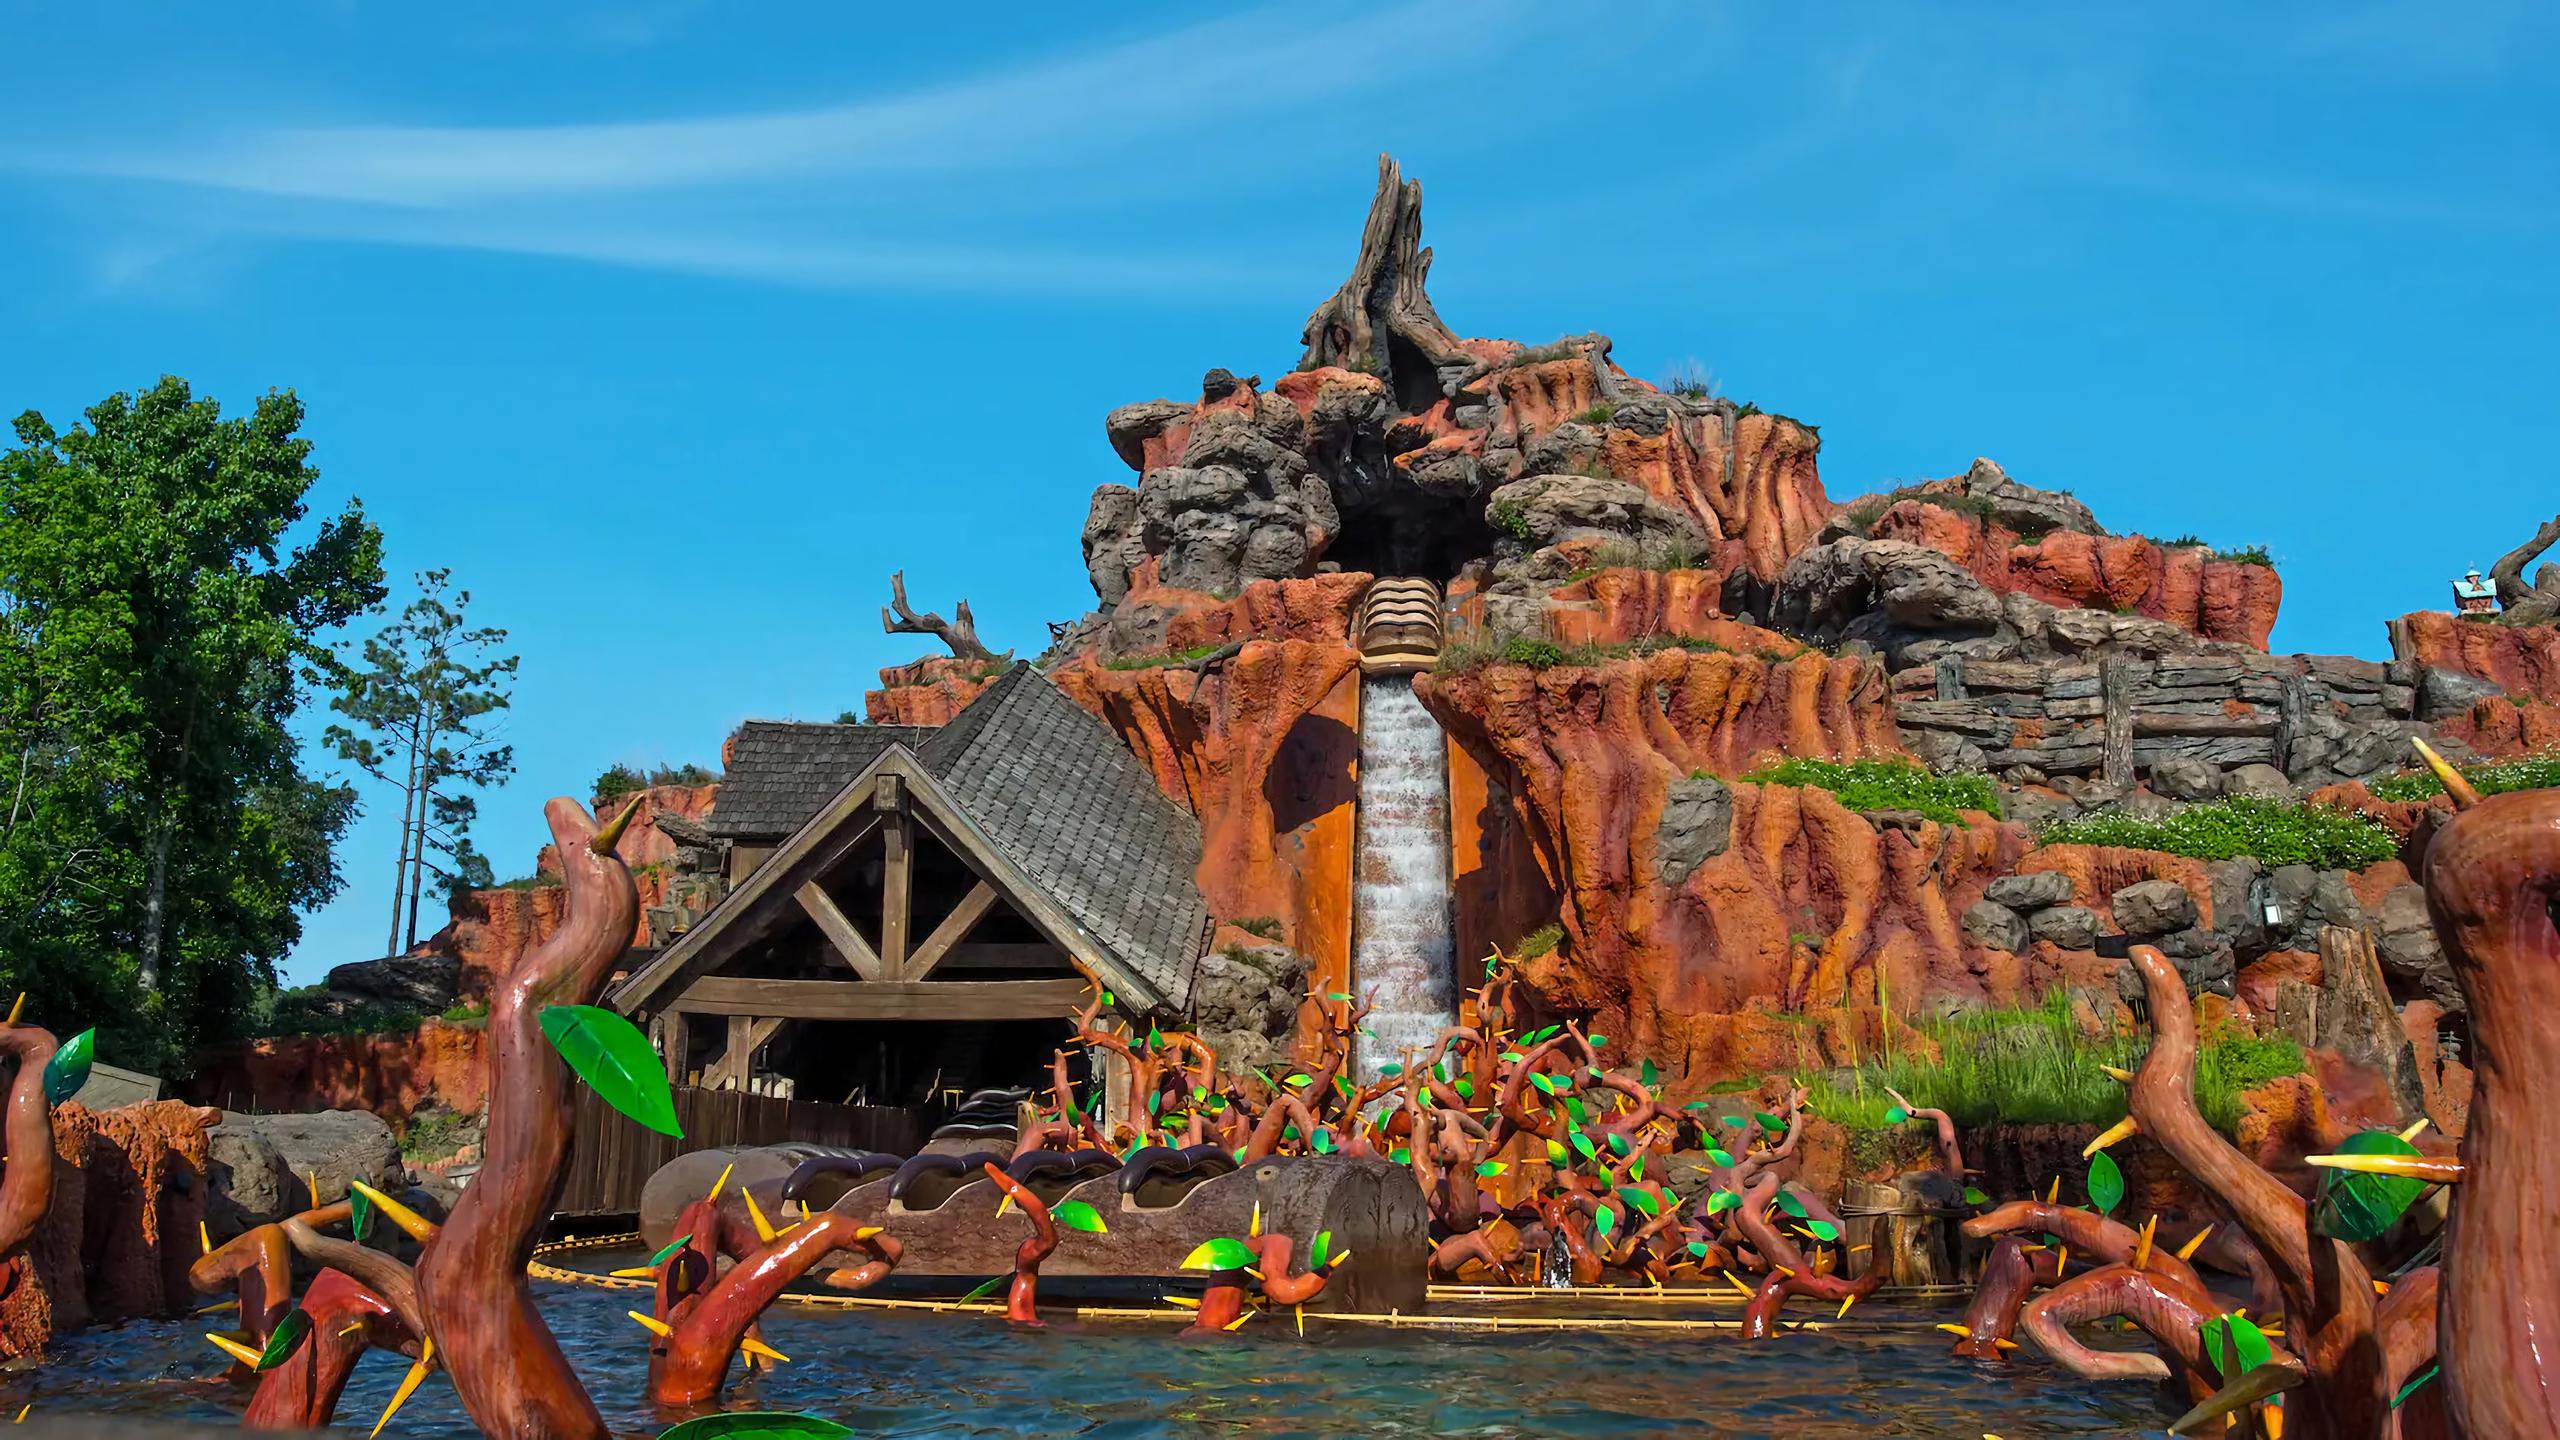 La atracción "Splash Mountain" en Magic Kingdom.